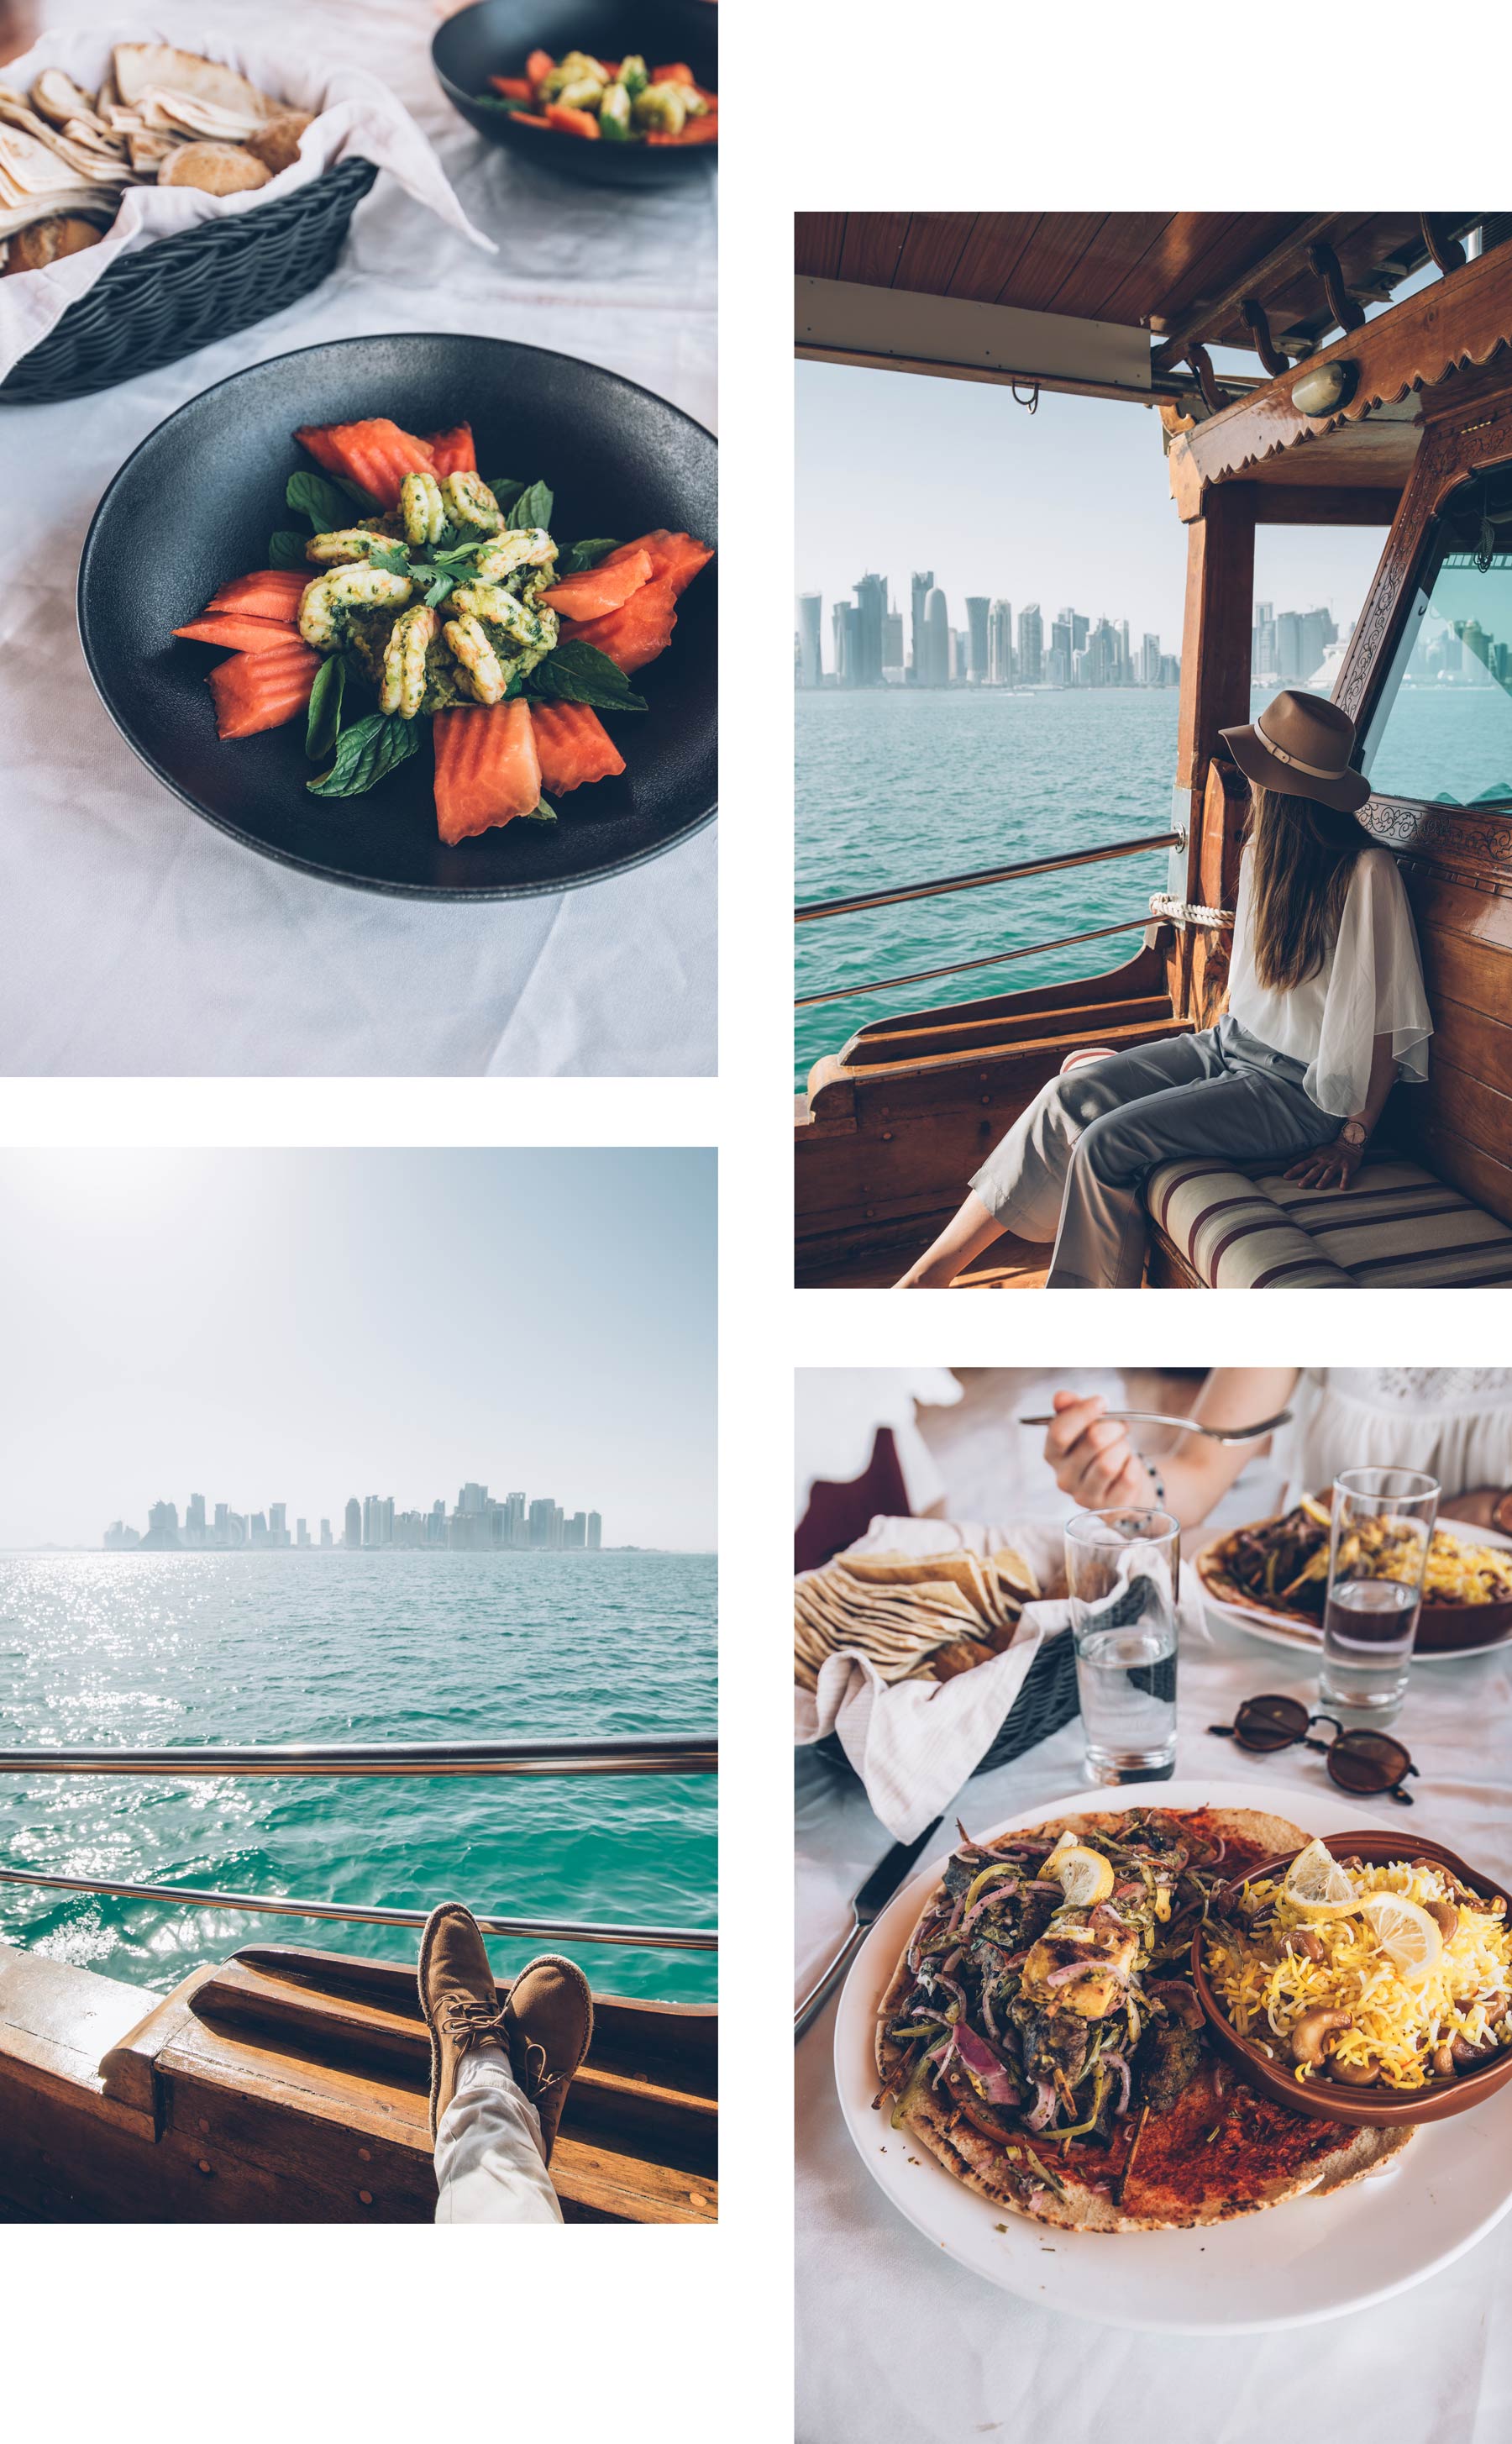 Manger sur un bateau traditionnel au Qatar, Doha